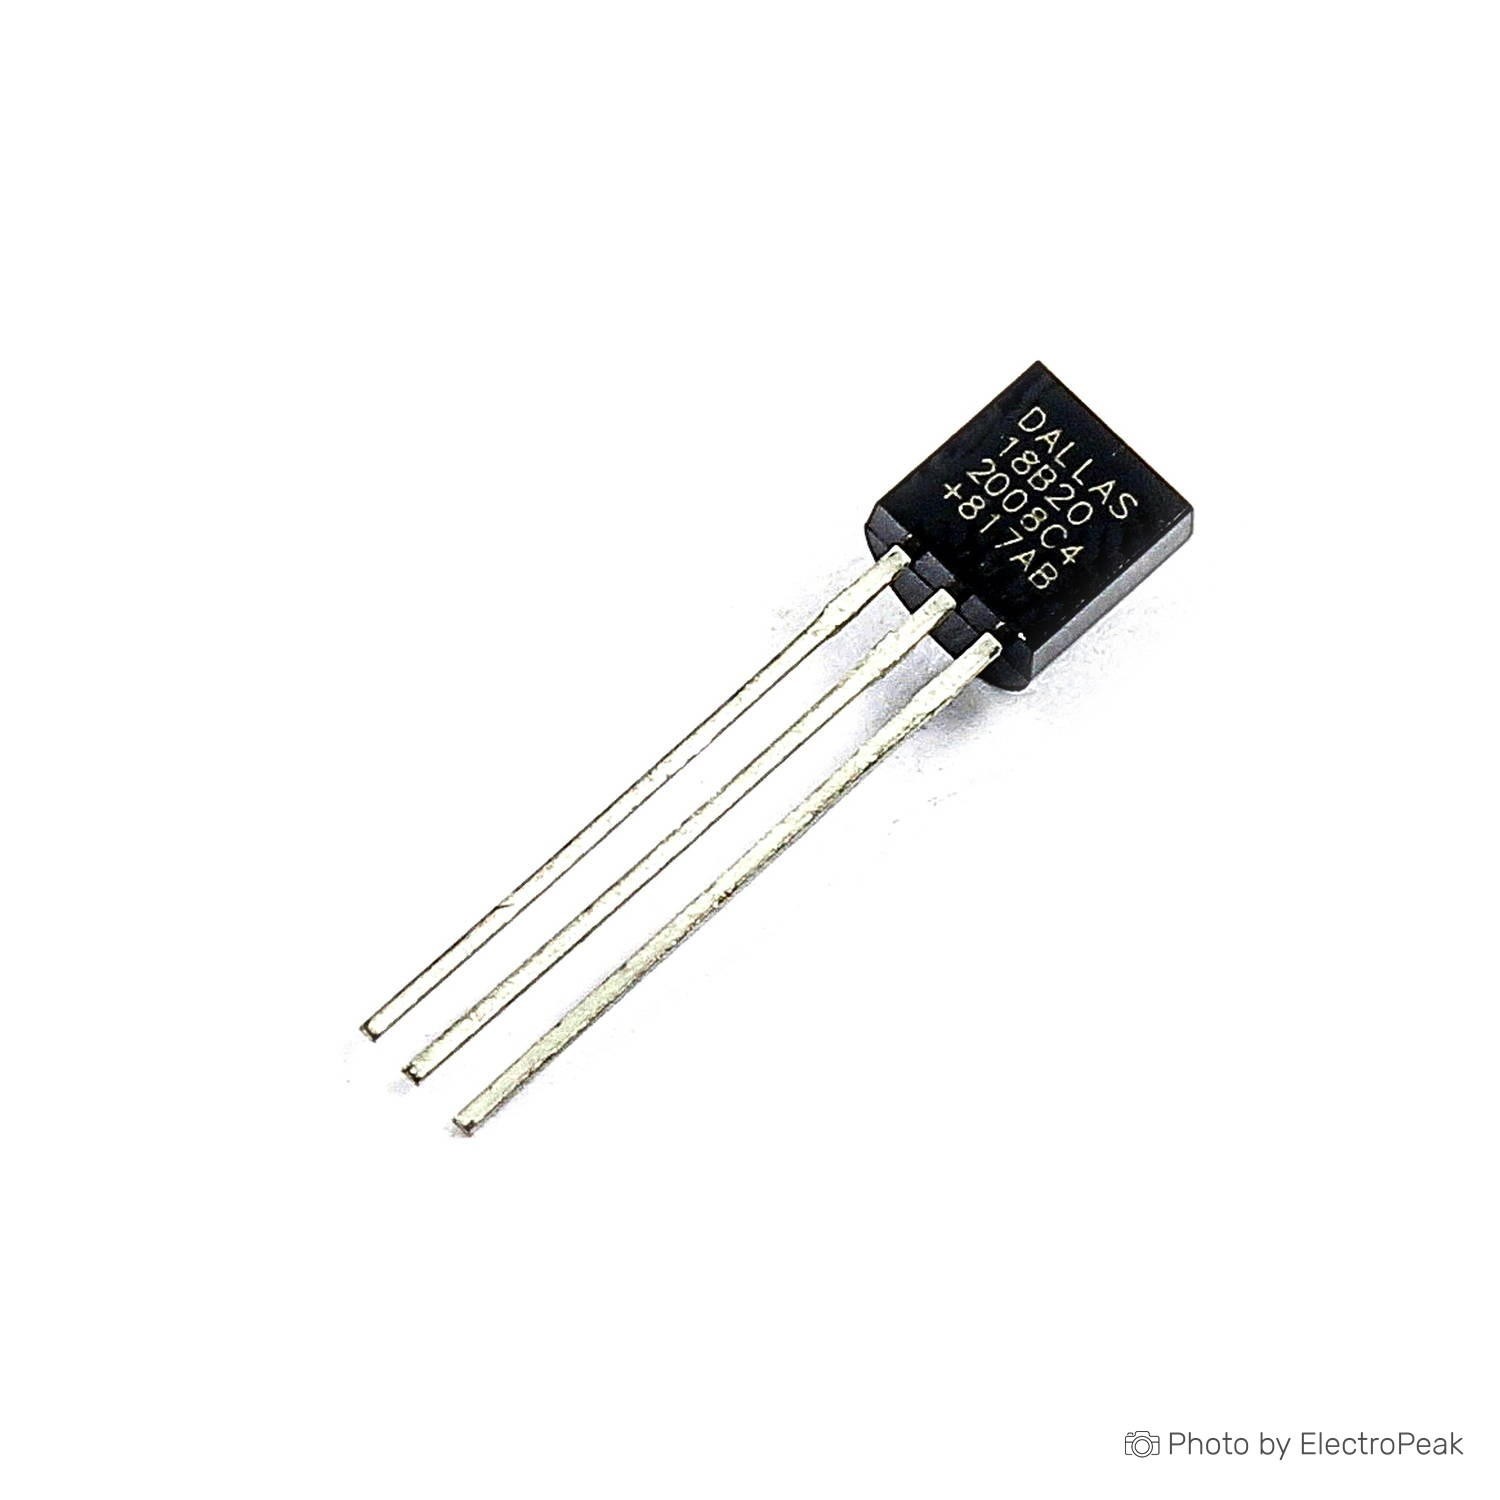 Screw-in DS18B20 temperature sensor